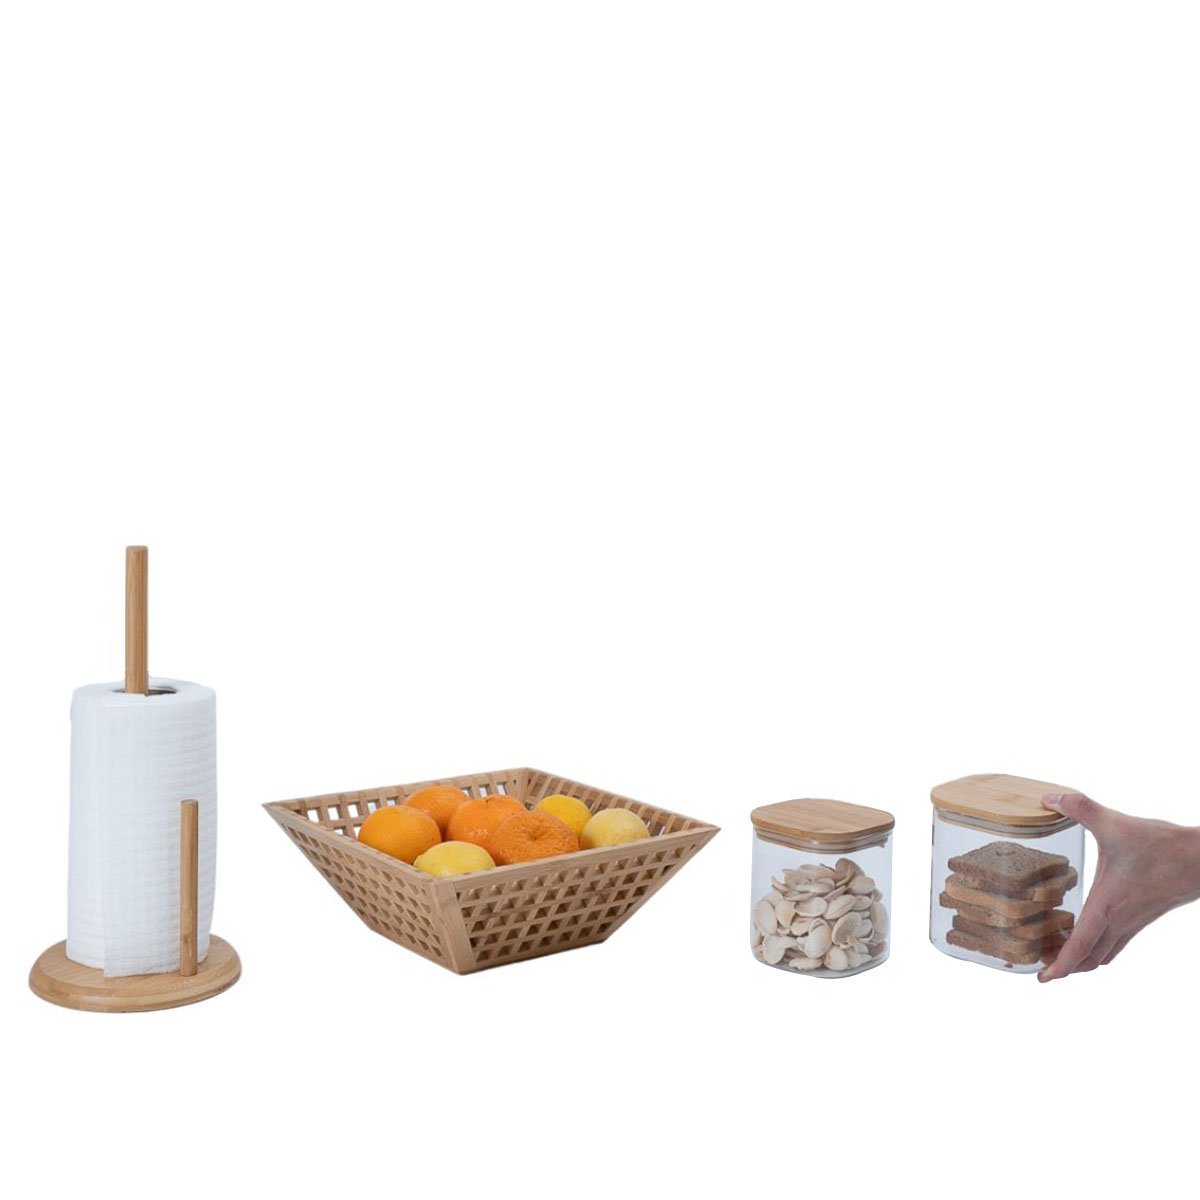 Kit com 2 potes de vidro com tampa de bambu 800ml, fruteira vazada de bambu e porta papel toalha de - 8